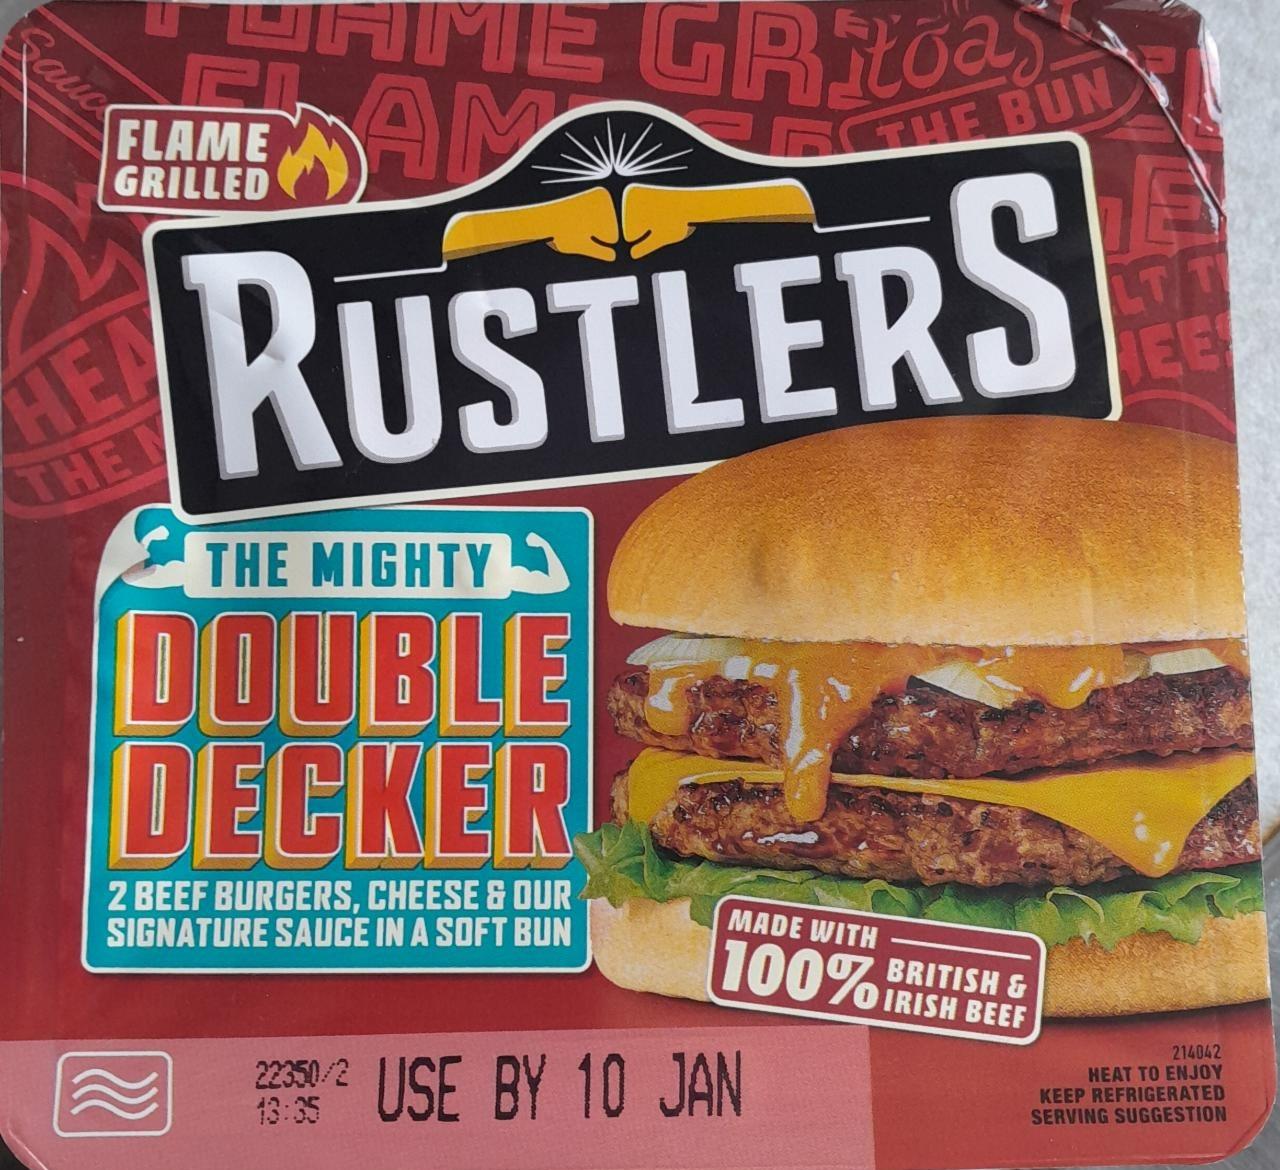 Fotografie - Double decker beef burgers Rustlers